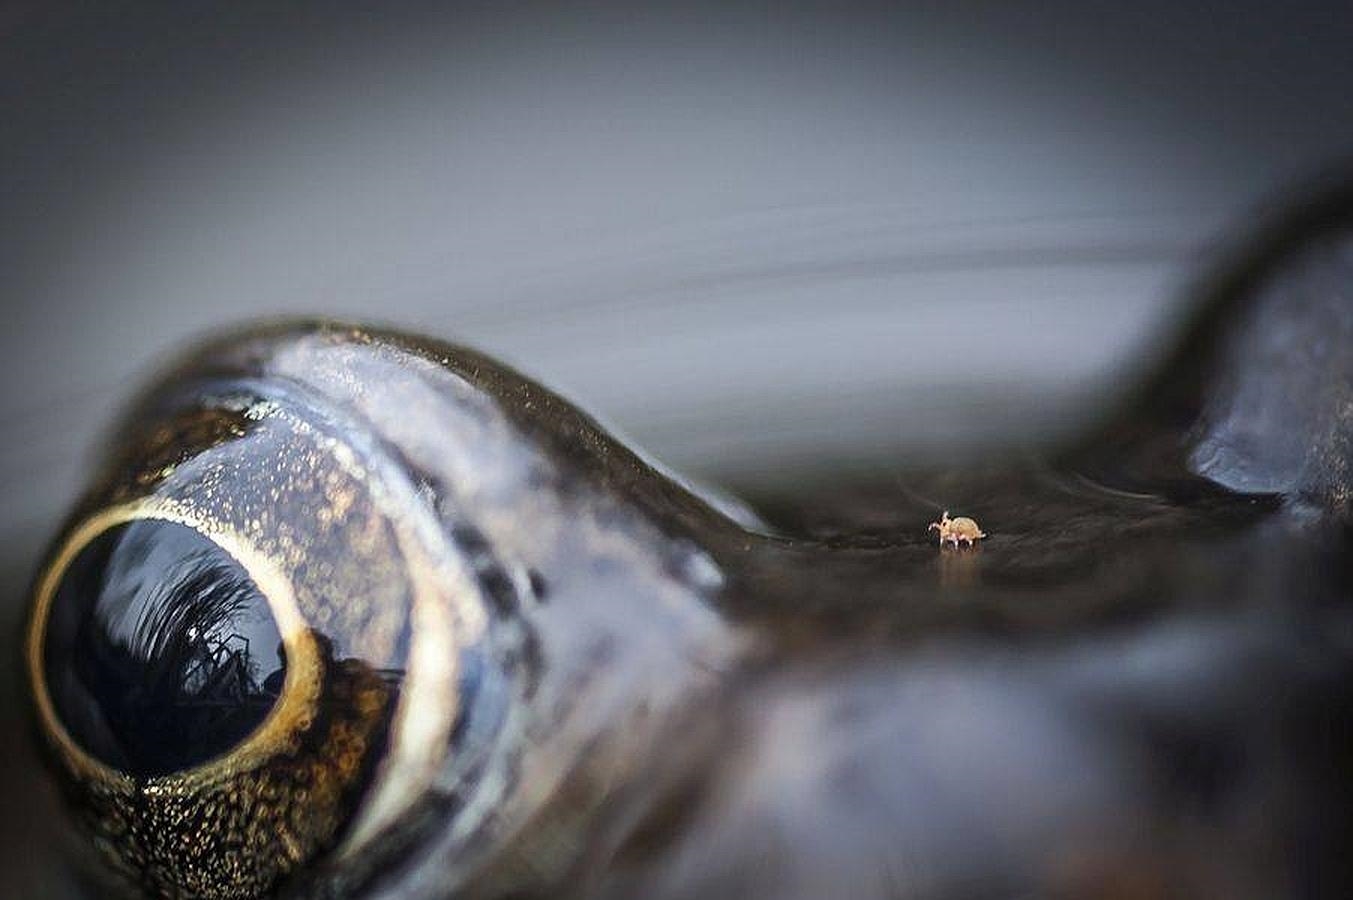 «Ácaro entre los ojos de la rana», ganadora de la categoría «Naturaleza desde cerca»